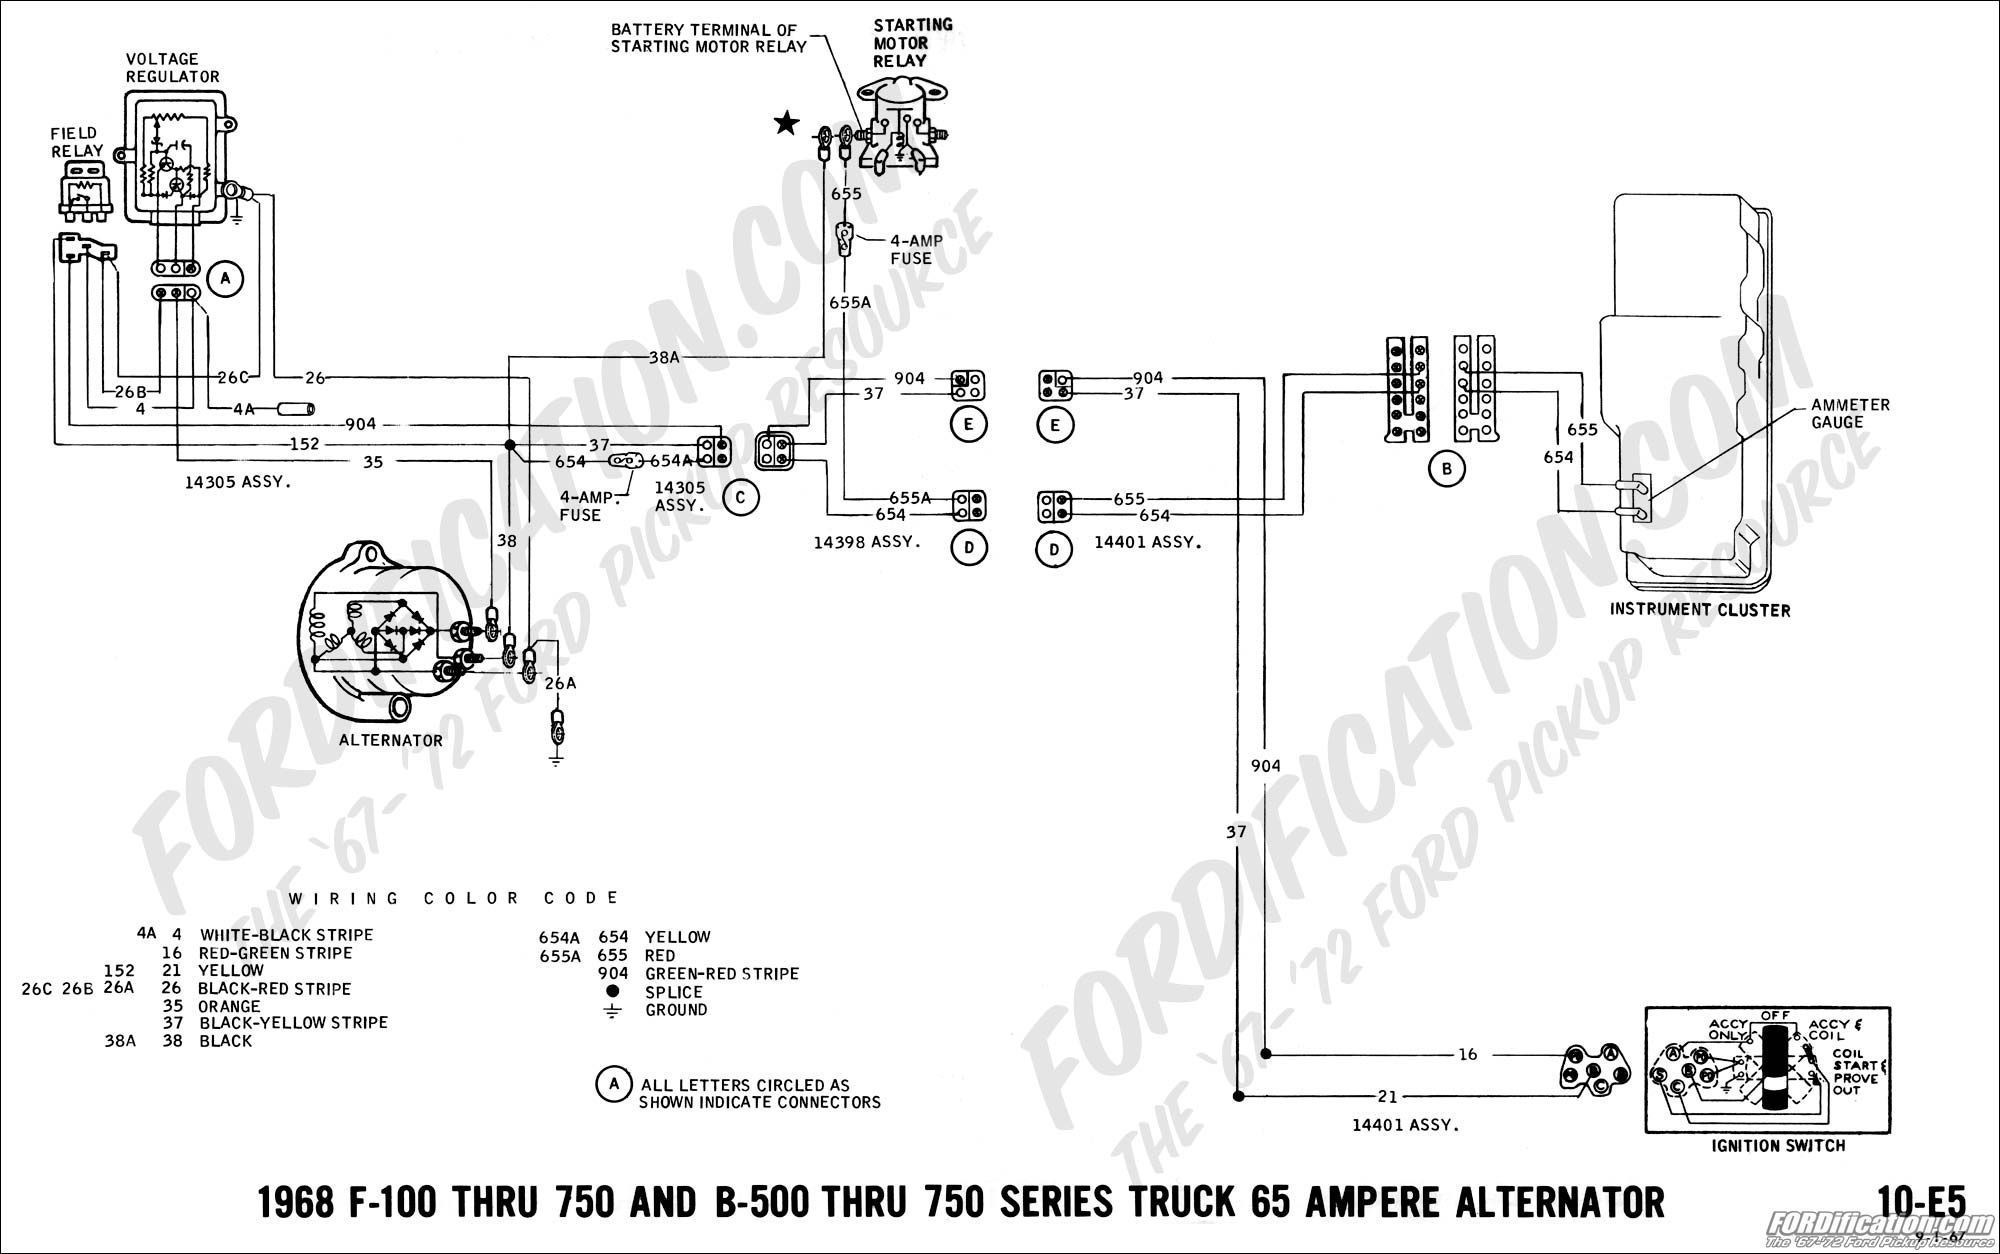 Alternator Wiring Diagram Honda Best Wiring Diagram Alternator Voltage Regulator Fresh 4 Wire Alternator